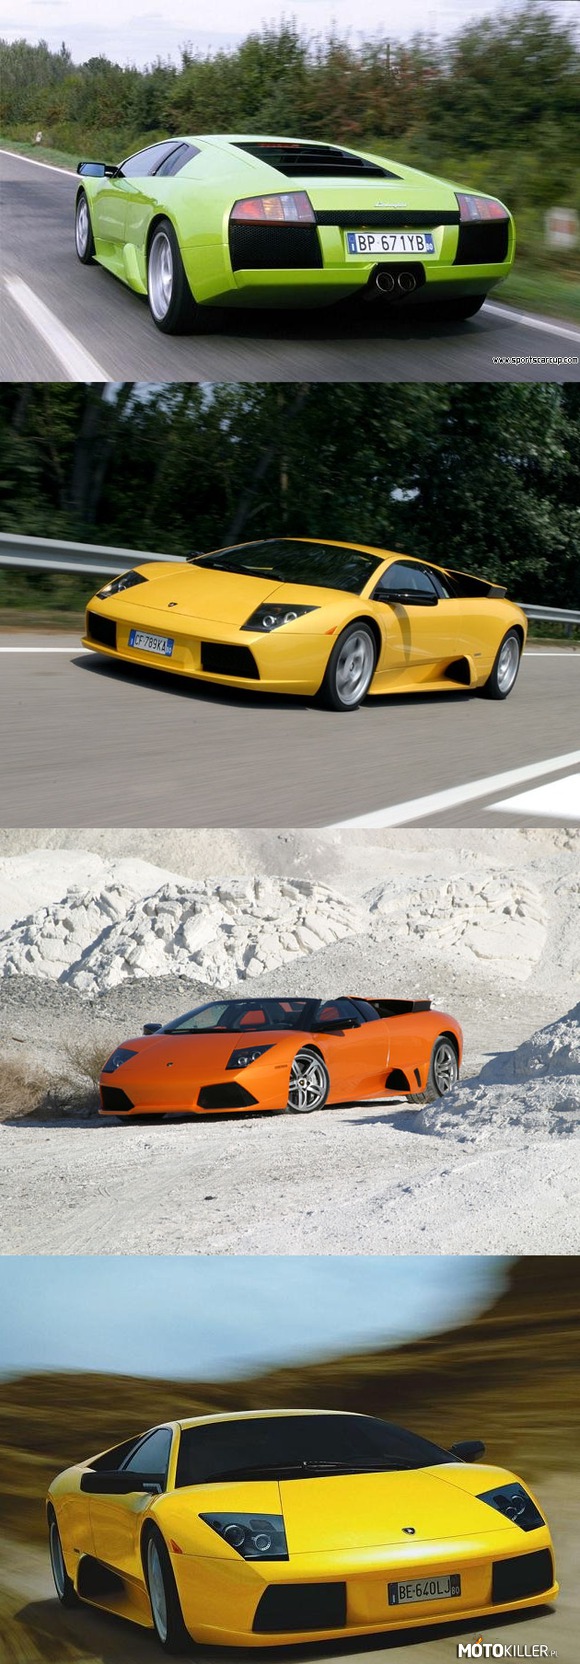 Lamborghini Murcielago Roadster/Coupe – Zdecydowanie moje najbardziej ulubione auto na świecie... jak to powiedział Jeremy Clarkson- to auto jest bardzo nerwowe, nie ma chwili, gdyby nie myślał jakby Cię pozbawić życia 